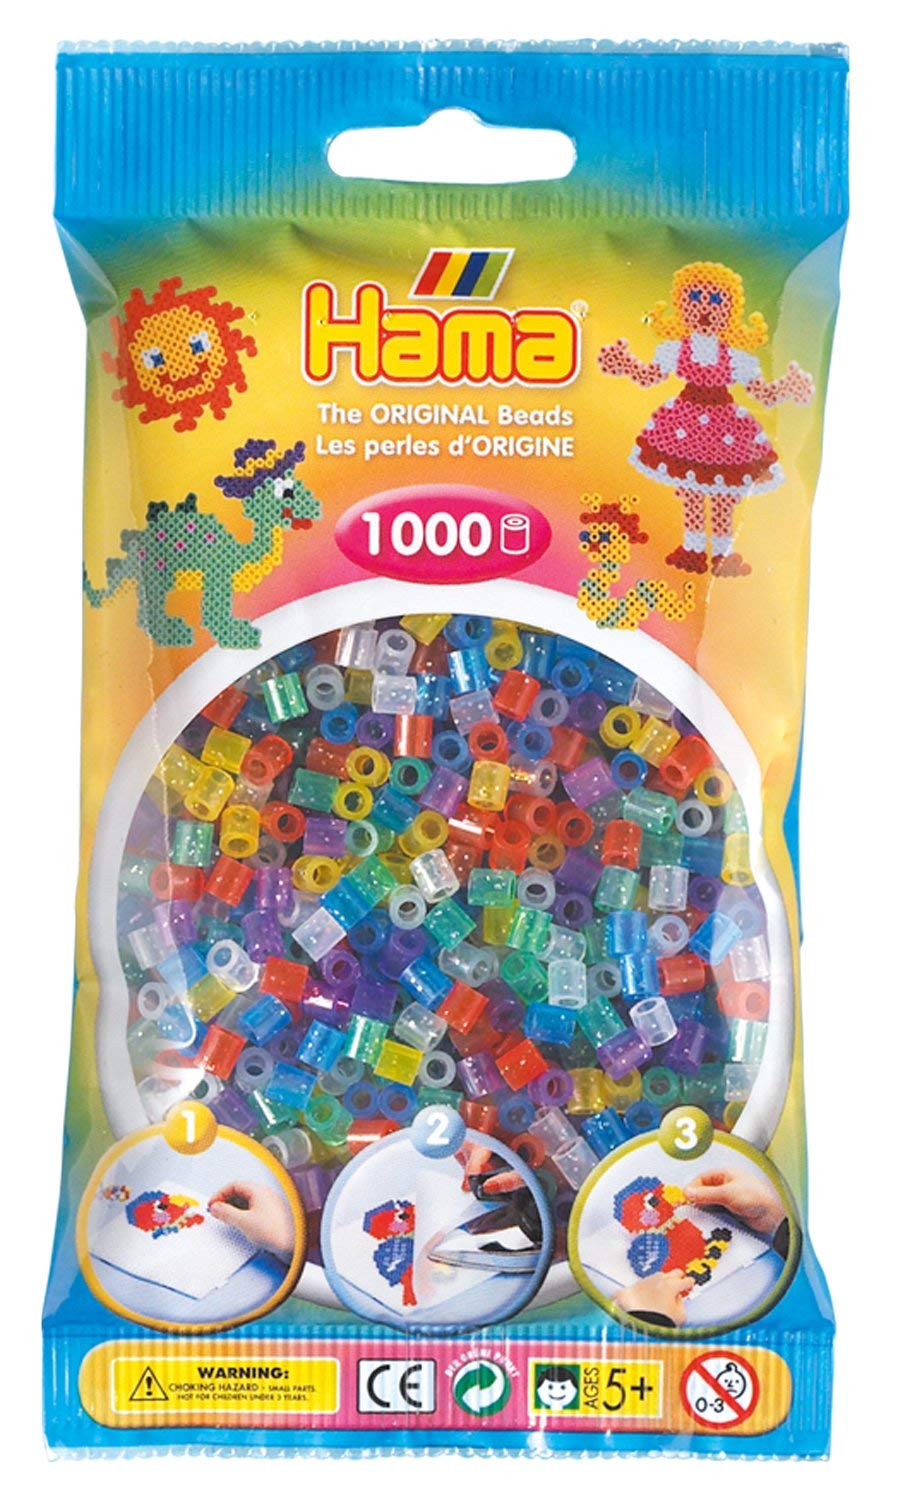 Meest Verkochte Knutselspullen is Hama een ideaal, gebruiksvriendelijk systeem waarin de creativiteit van het kind zich op een speelse manier kan ontwikkelen. Het ontwerpen van uw eigen motieven en deze te strijken is de bekendste manier om met Hama-parels te spelen. Inhoud: ongeveer 1.000 kralen.